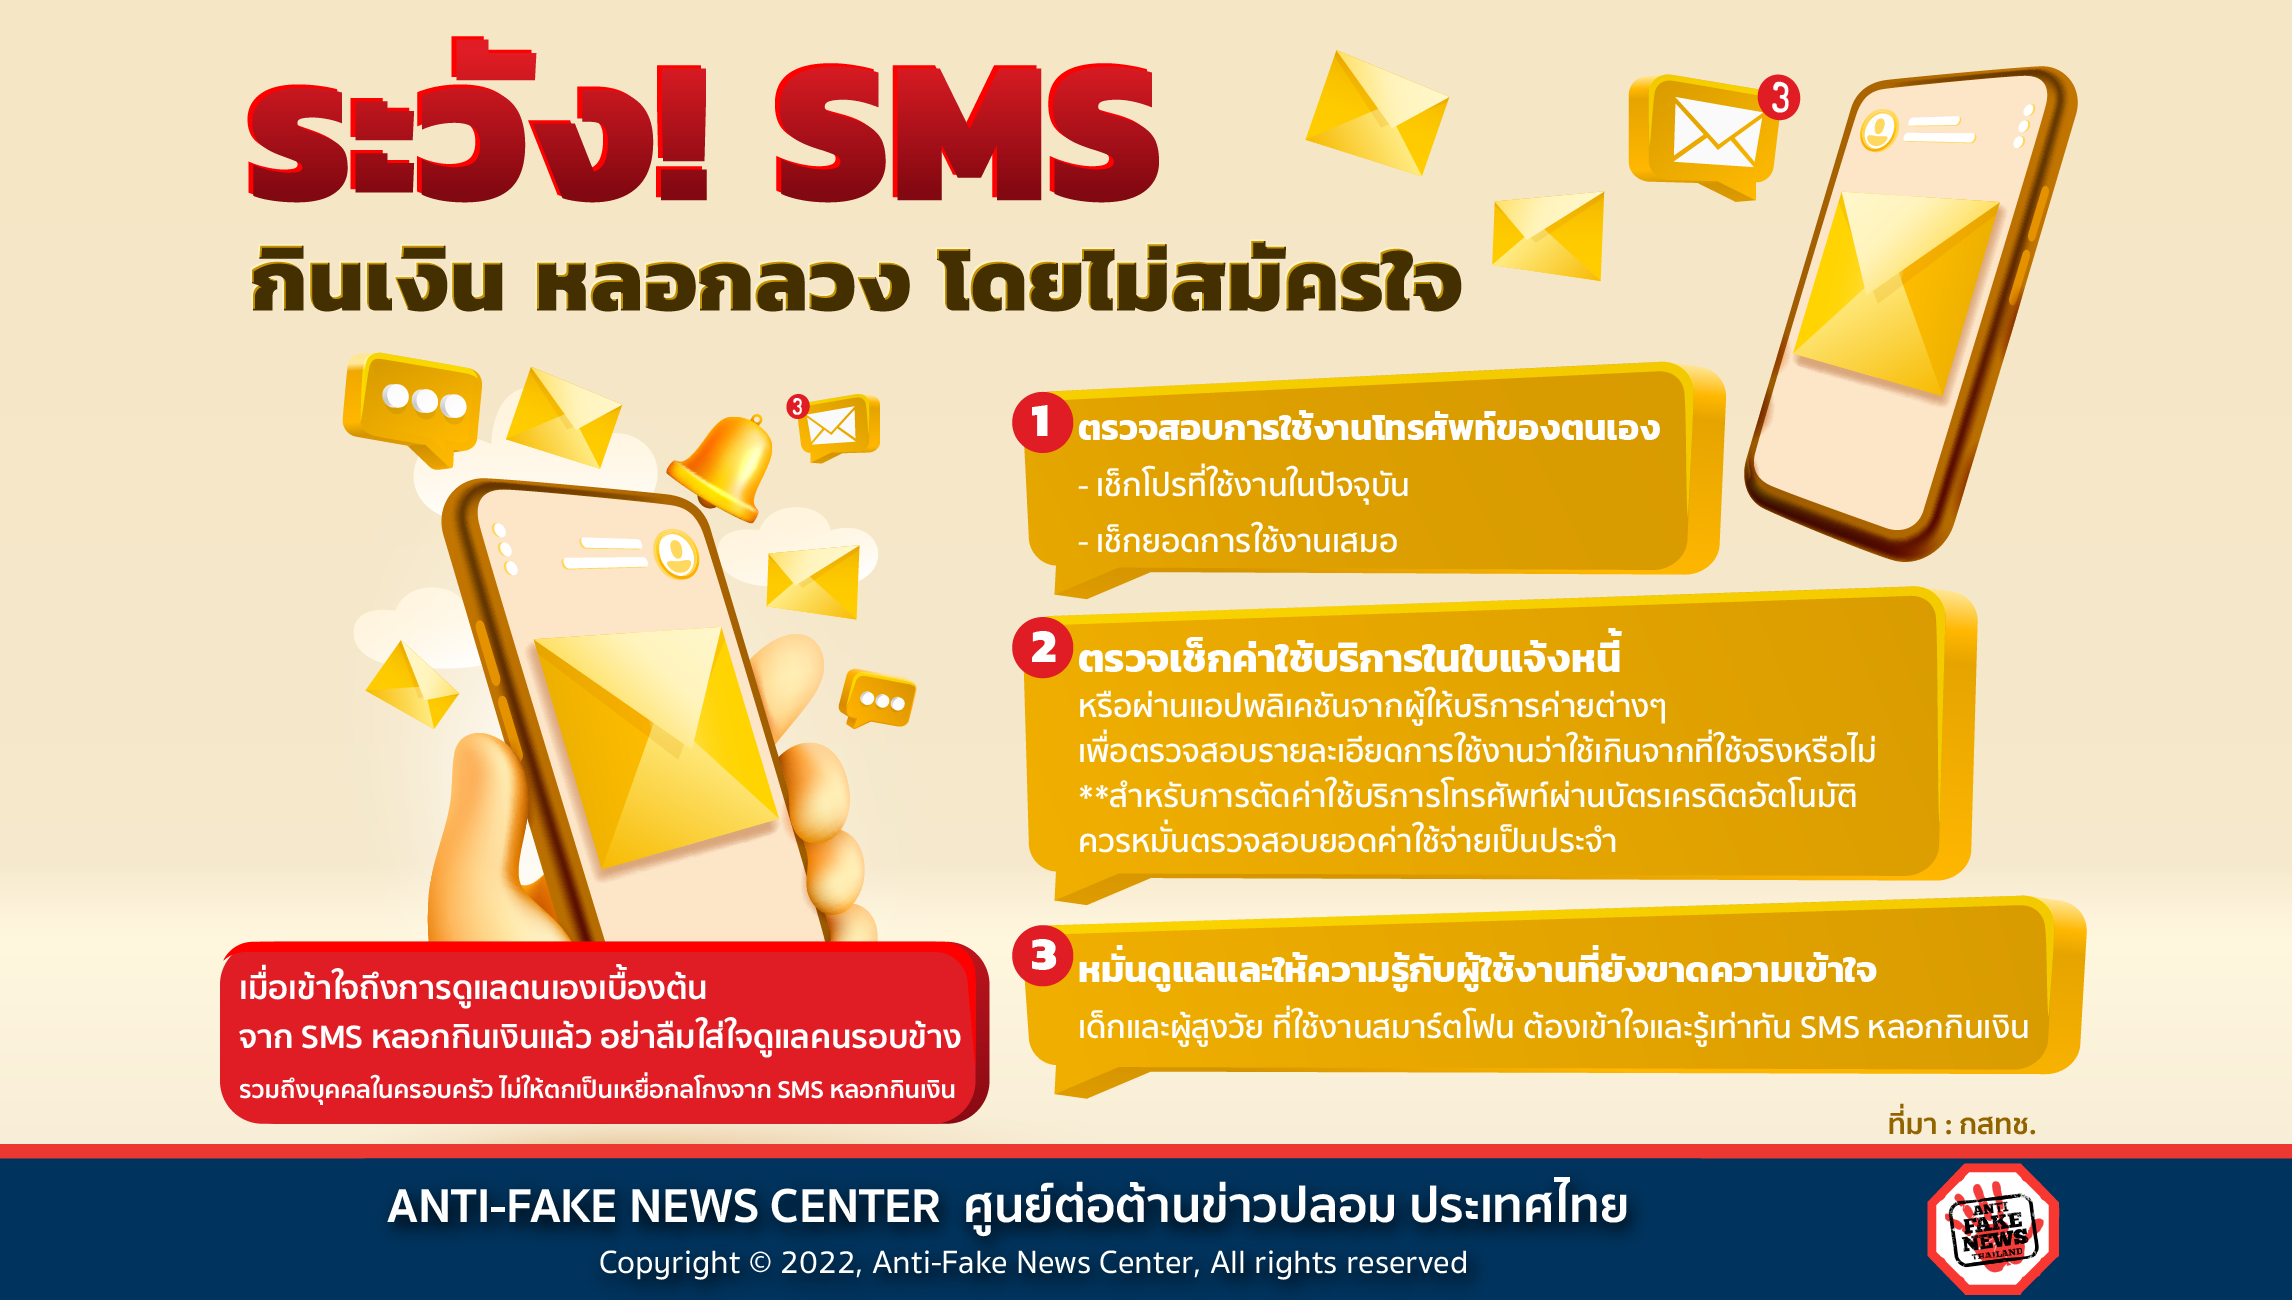 ระวัง! SMS กินเงิน หลอกลวง โดยไม่สมัครใจ